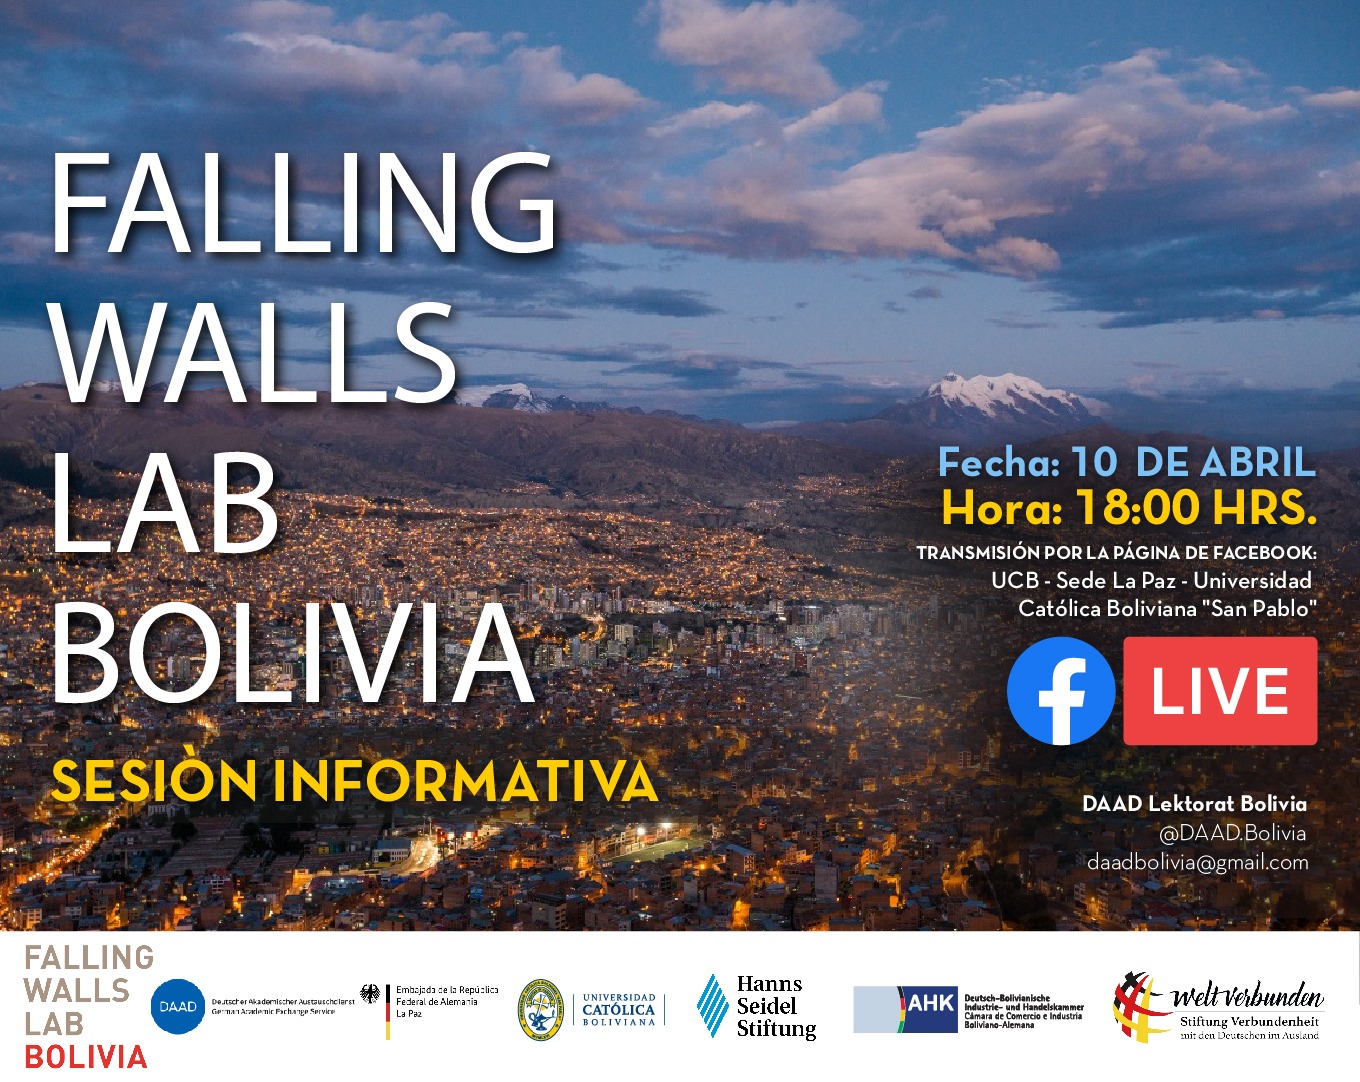 🔴 ¿Tienes dudas sobre el concurso internacional Falling Walls Lab Bolivia? 🔴